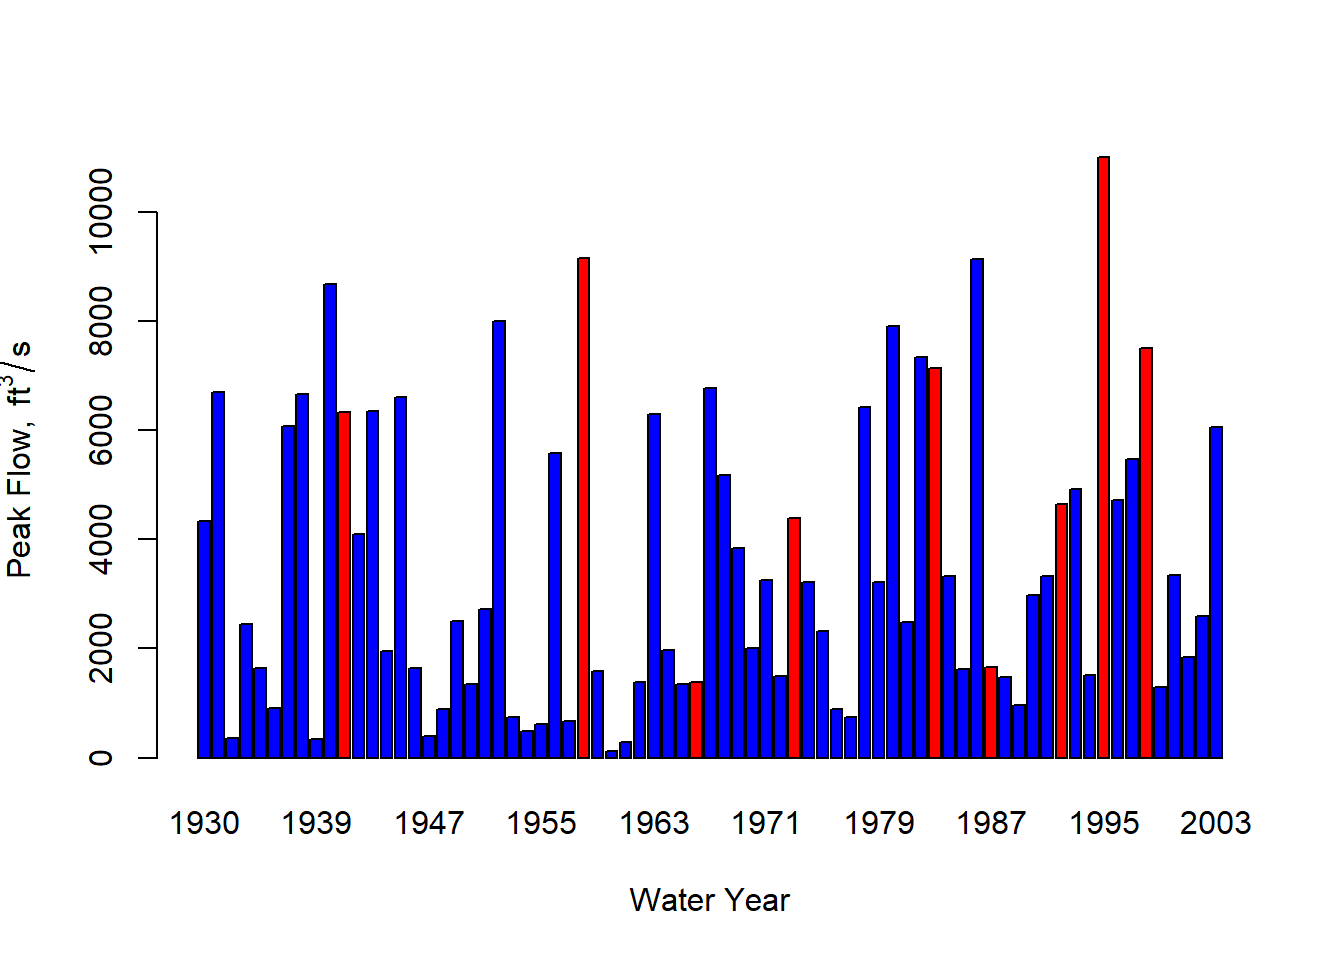 Annual peak flows for USGS gauge 11169000, highlighting strong El Niño years in red.